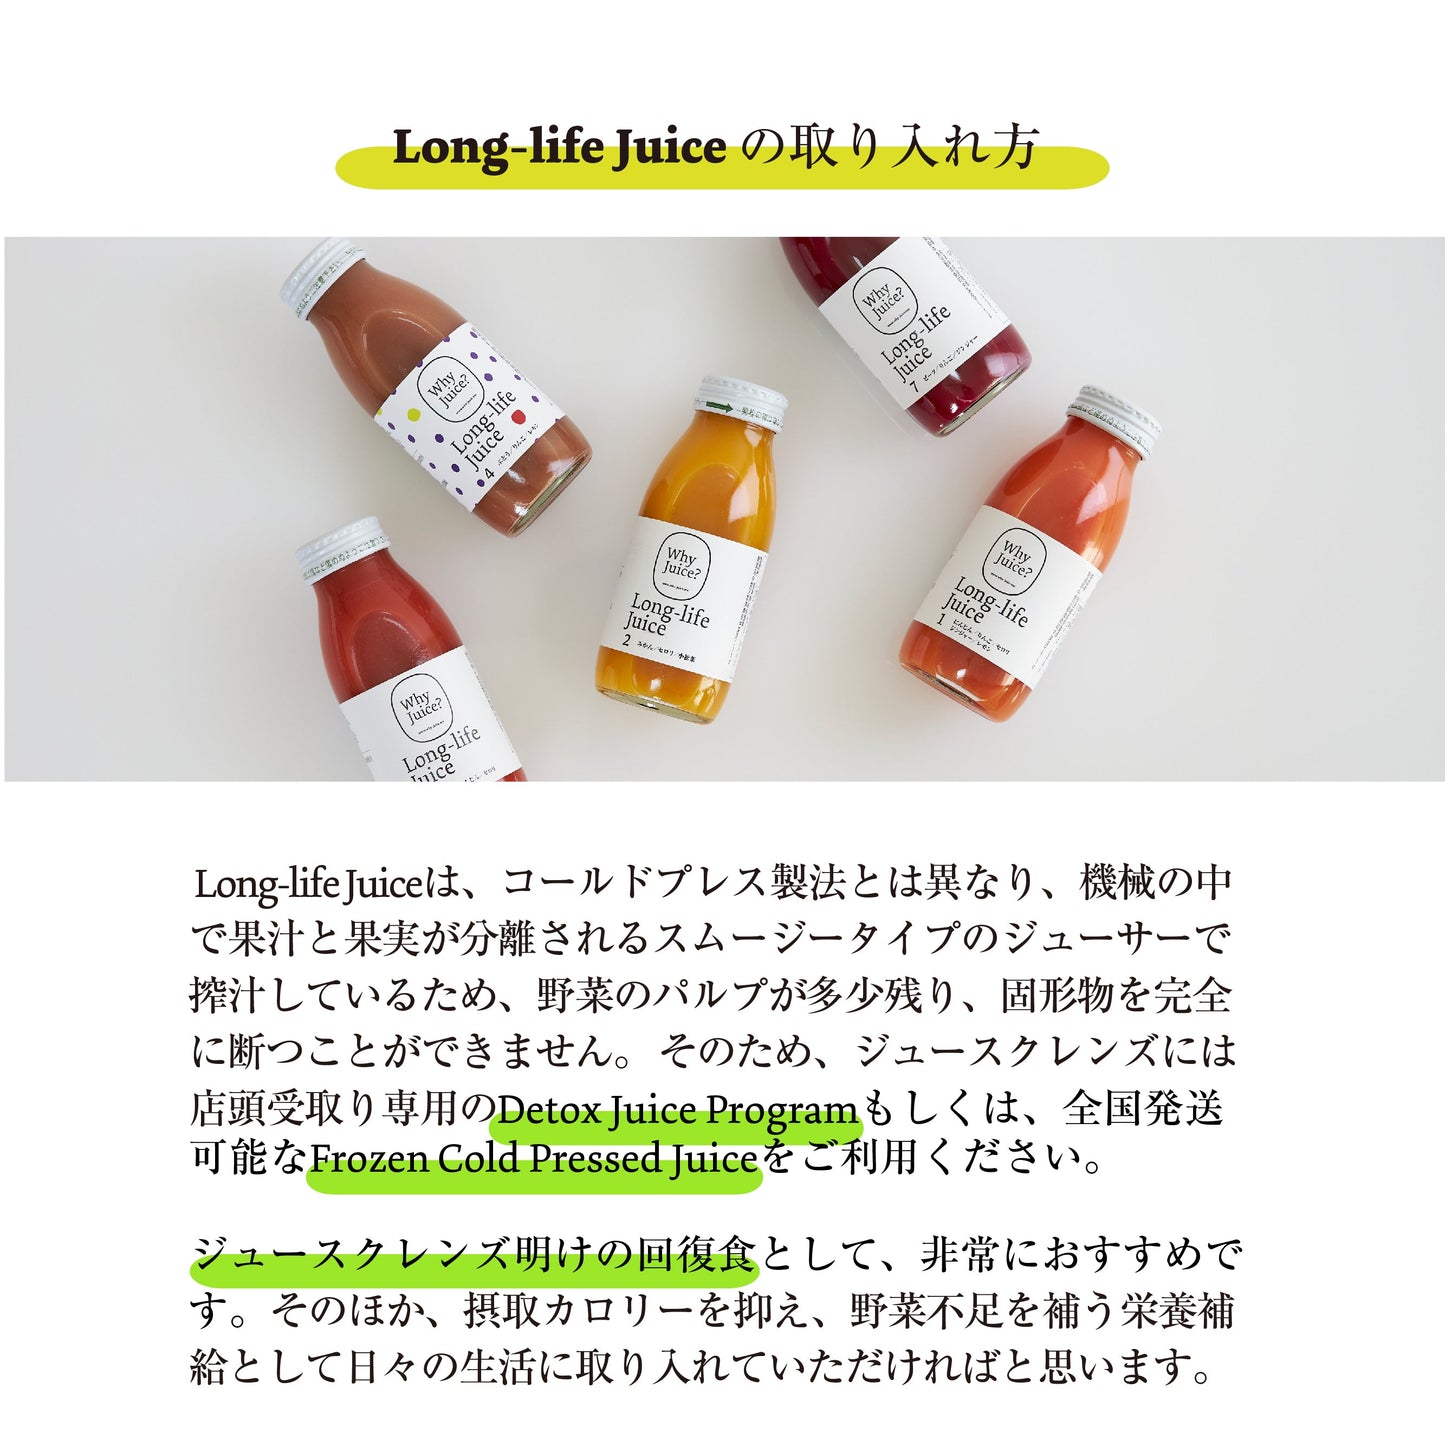 Long-life Juice 12本ギフトボックス(4種類ミックスセット)